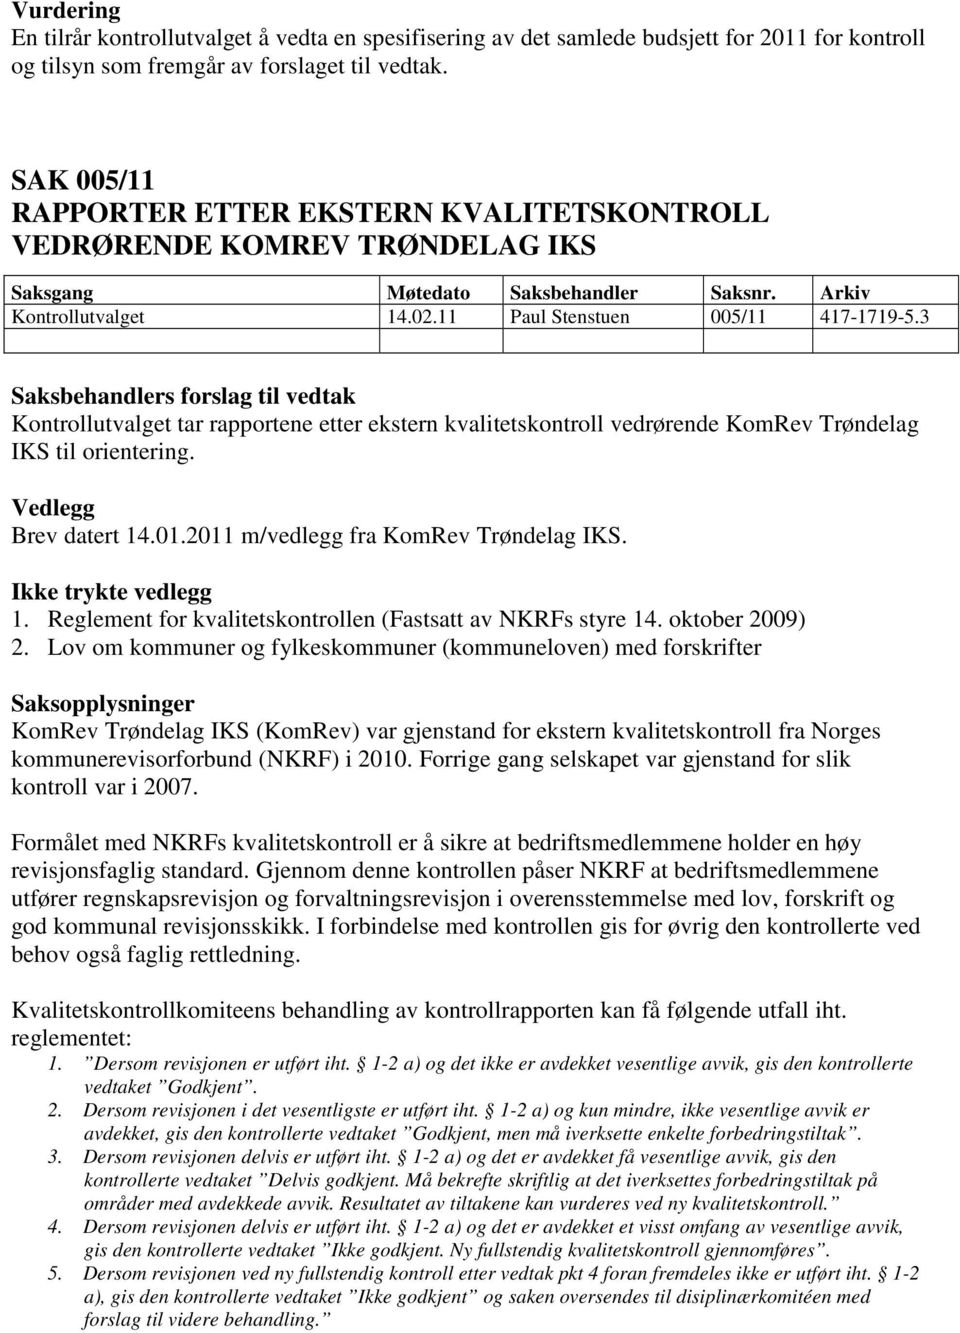 3 Kontrollutvalget tar rapportene etter ekstern kvalitetskontroll vedrørende KomRev Trøndelag IKS til orientering. Brev datert 14.01.2011 m/vedlegg fra KomRev Trøndelag IKS. Ikke trykte vedlegg 1.